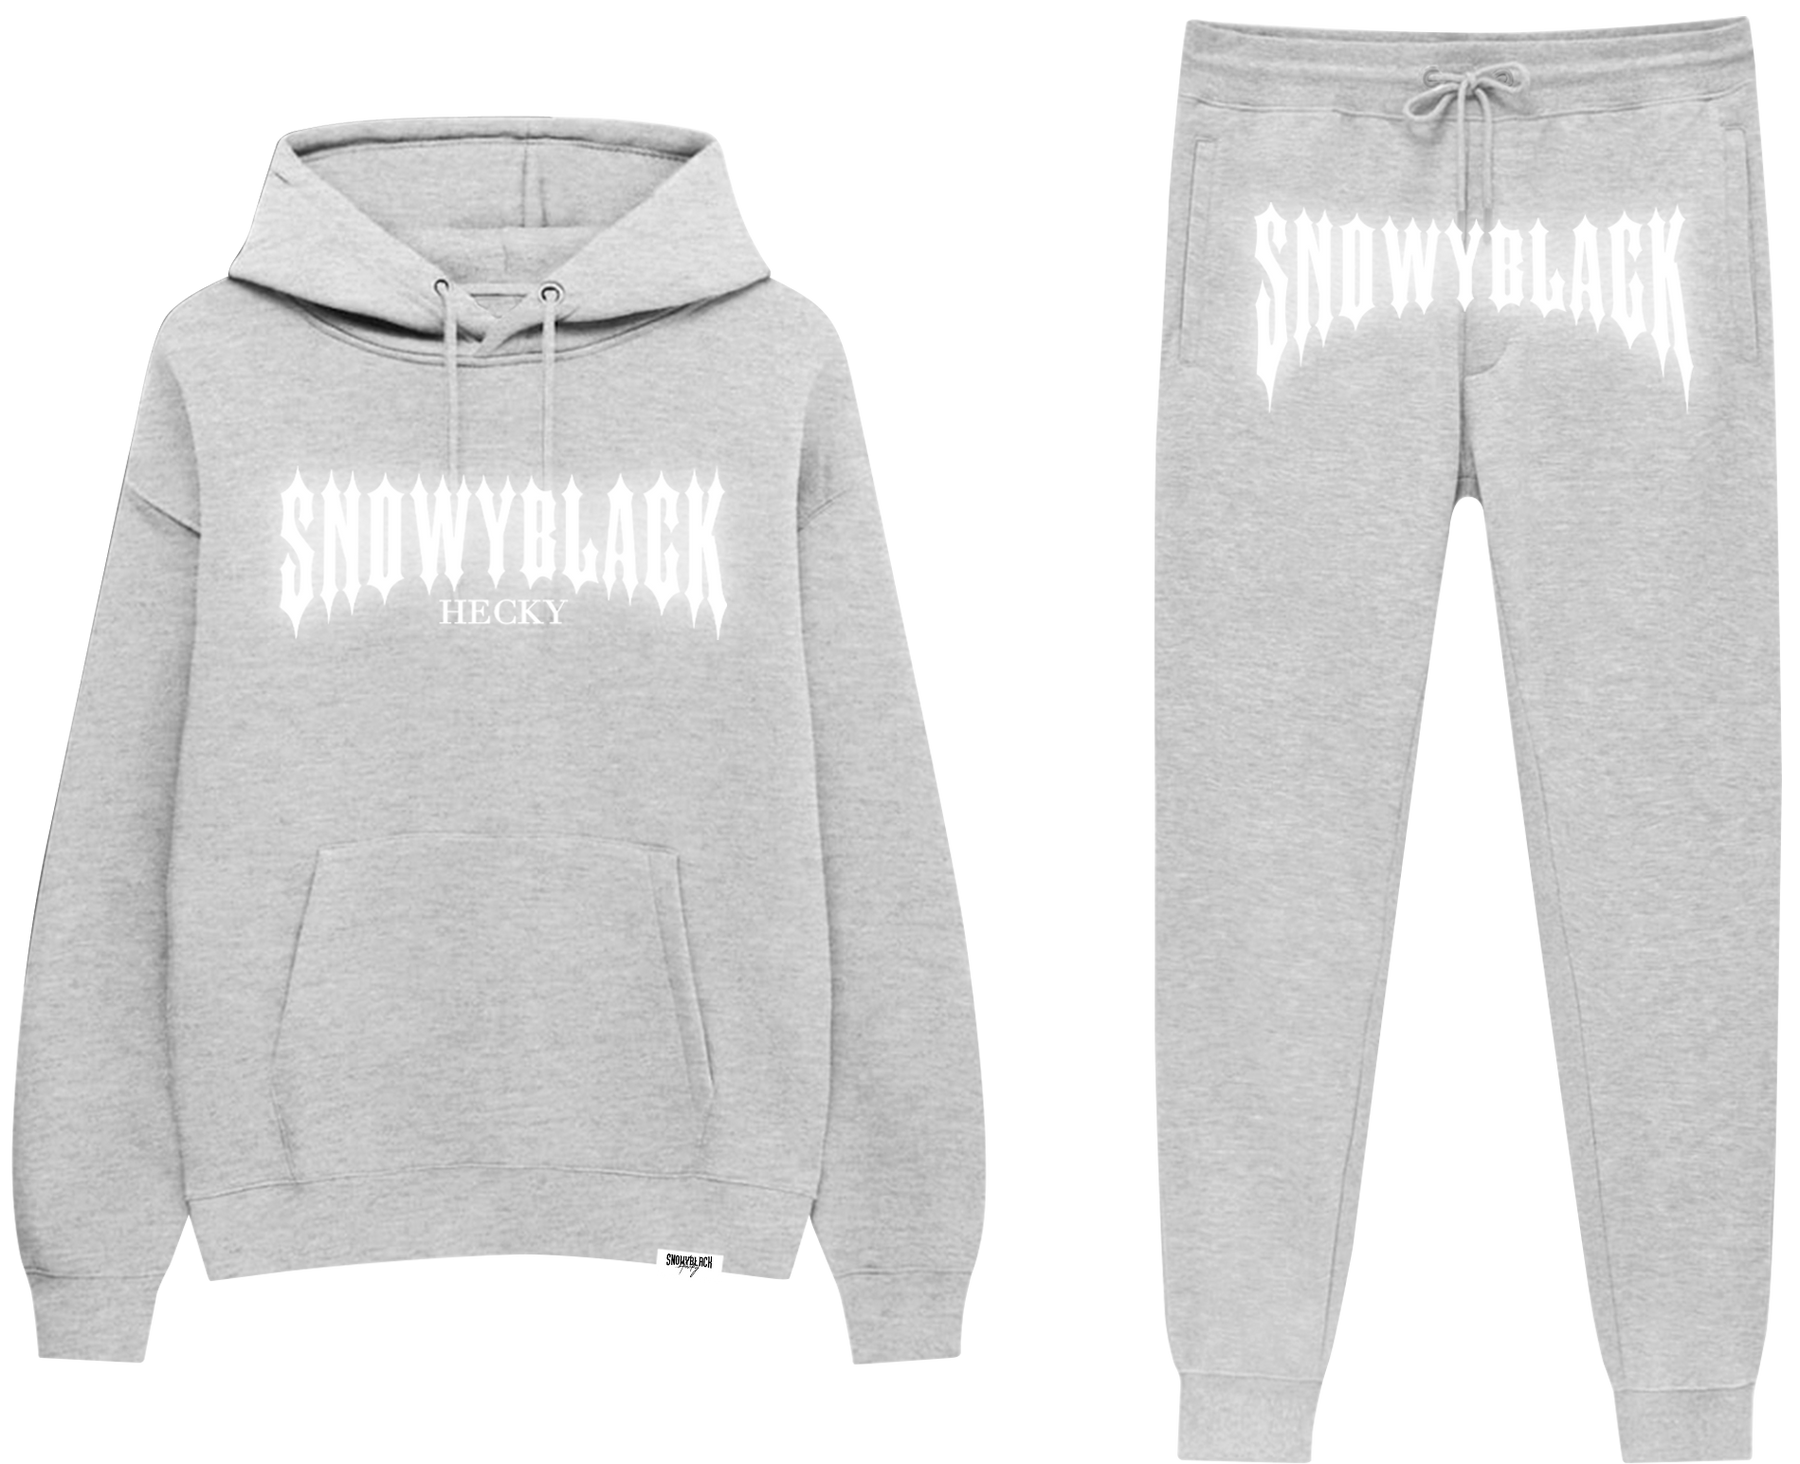 CONJUNTO SNOWYBLACK REFLECTIVE GRIS – SnowyBlack